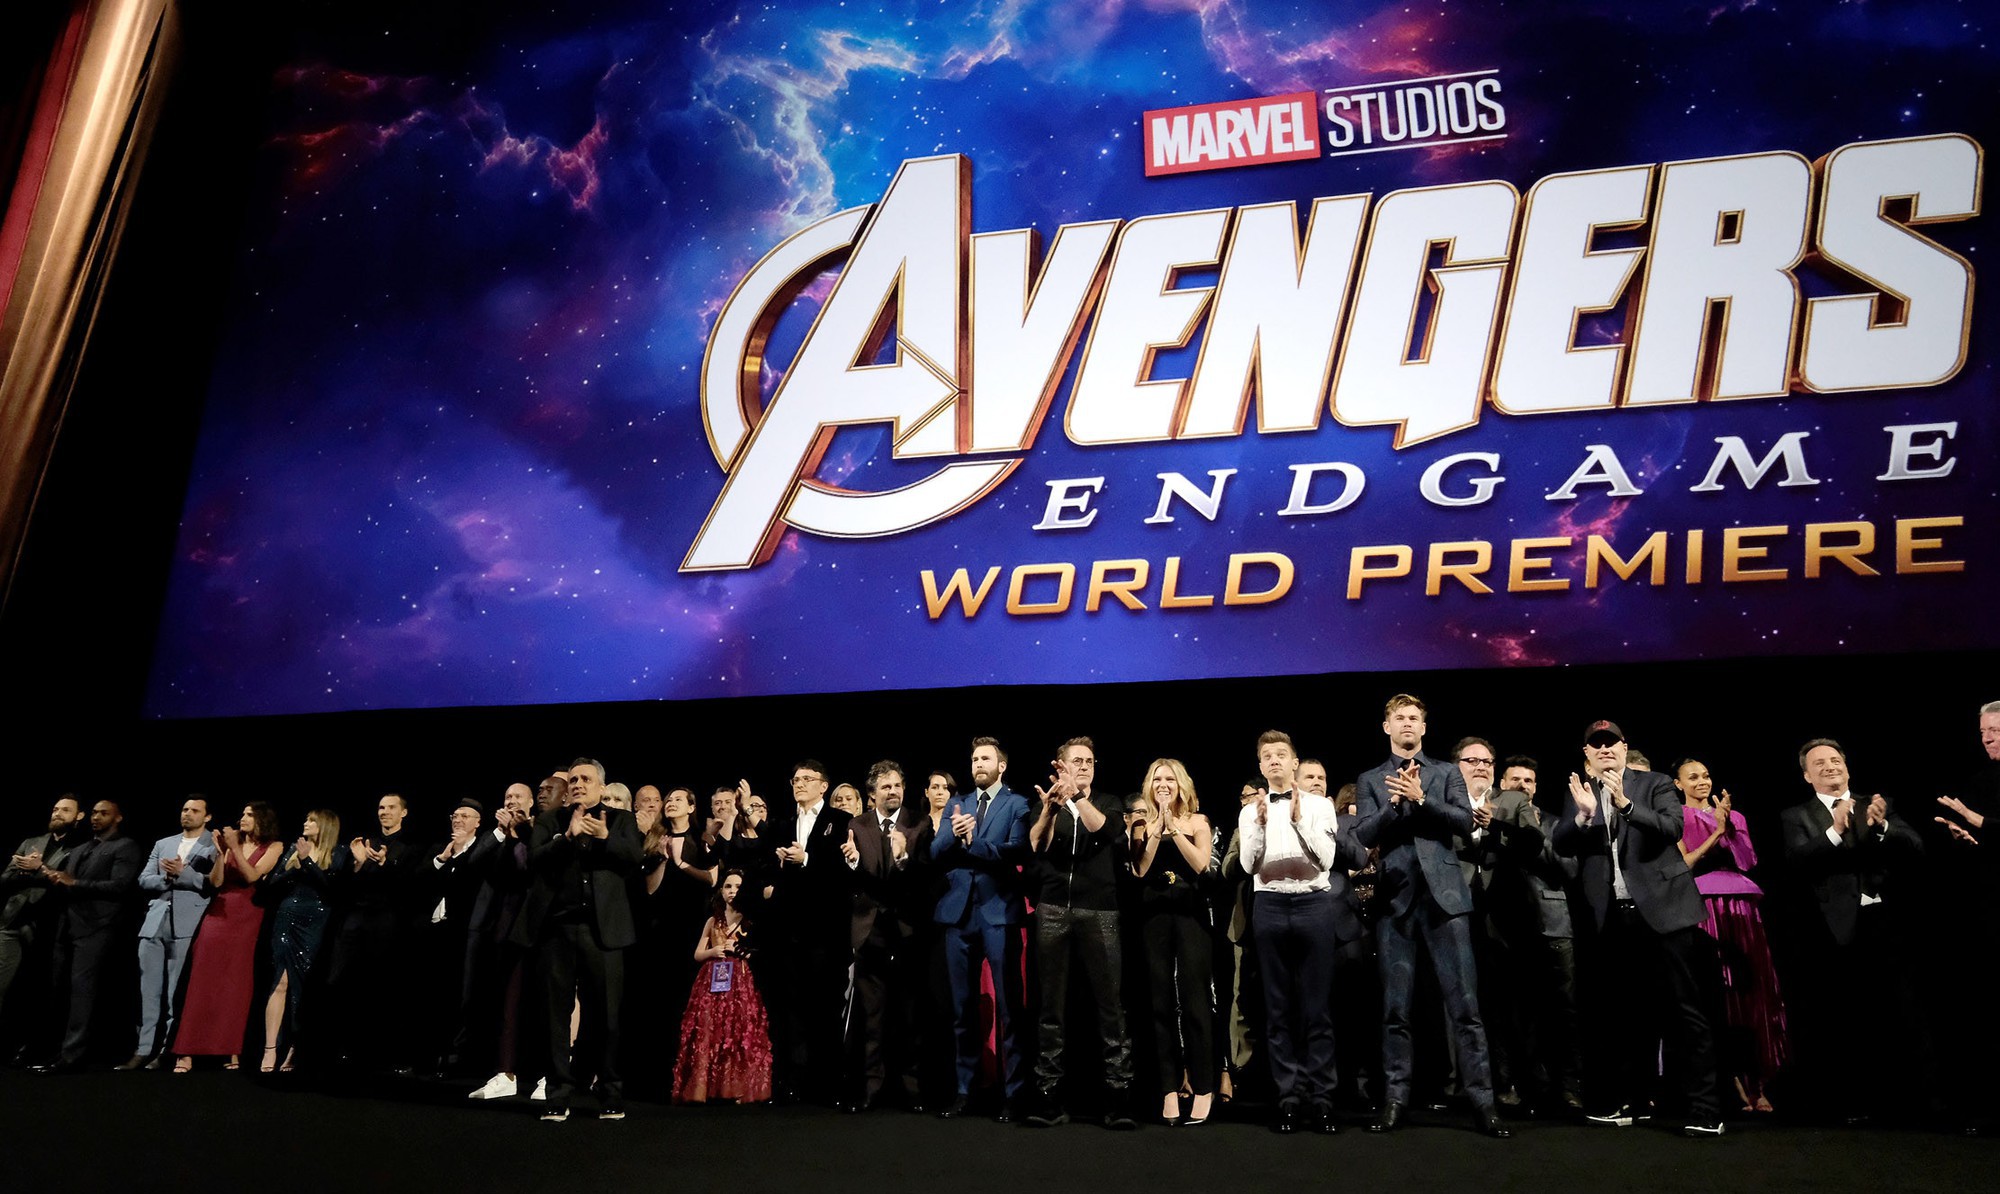 Review Phim Avengers: Endgame 2019 - Bài viết không spoil tình tiết phim, dành cho những bạn chưa đi xem!